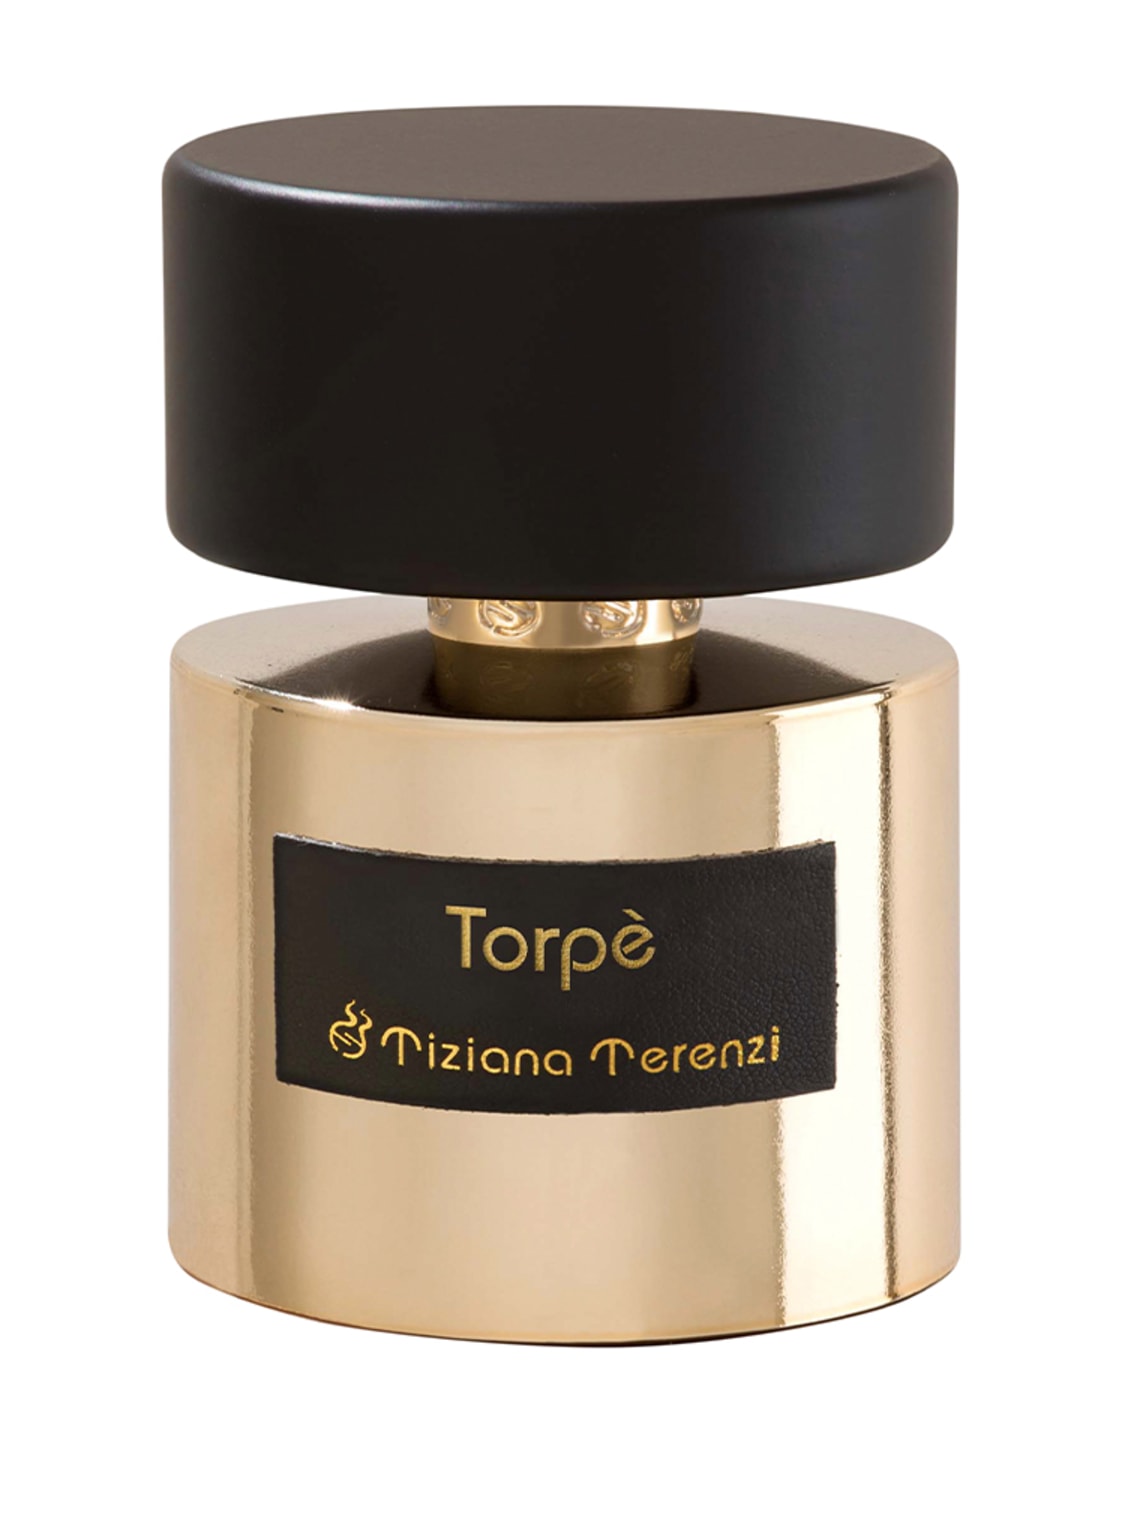 Tiziana Terenzi Torpè Extrait de Parfum 100 ml von Tiziana Terenzi